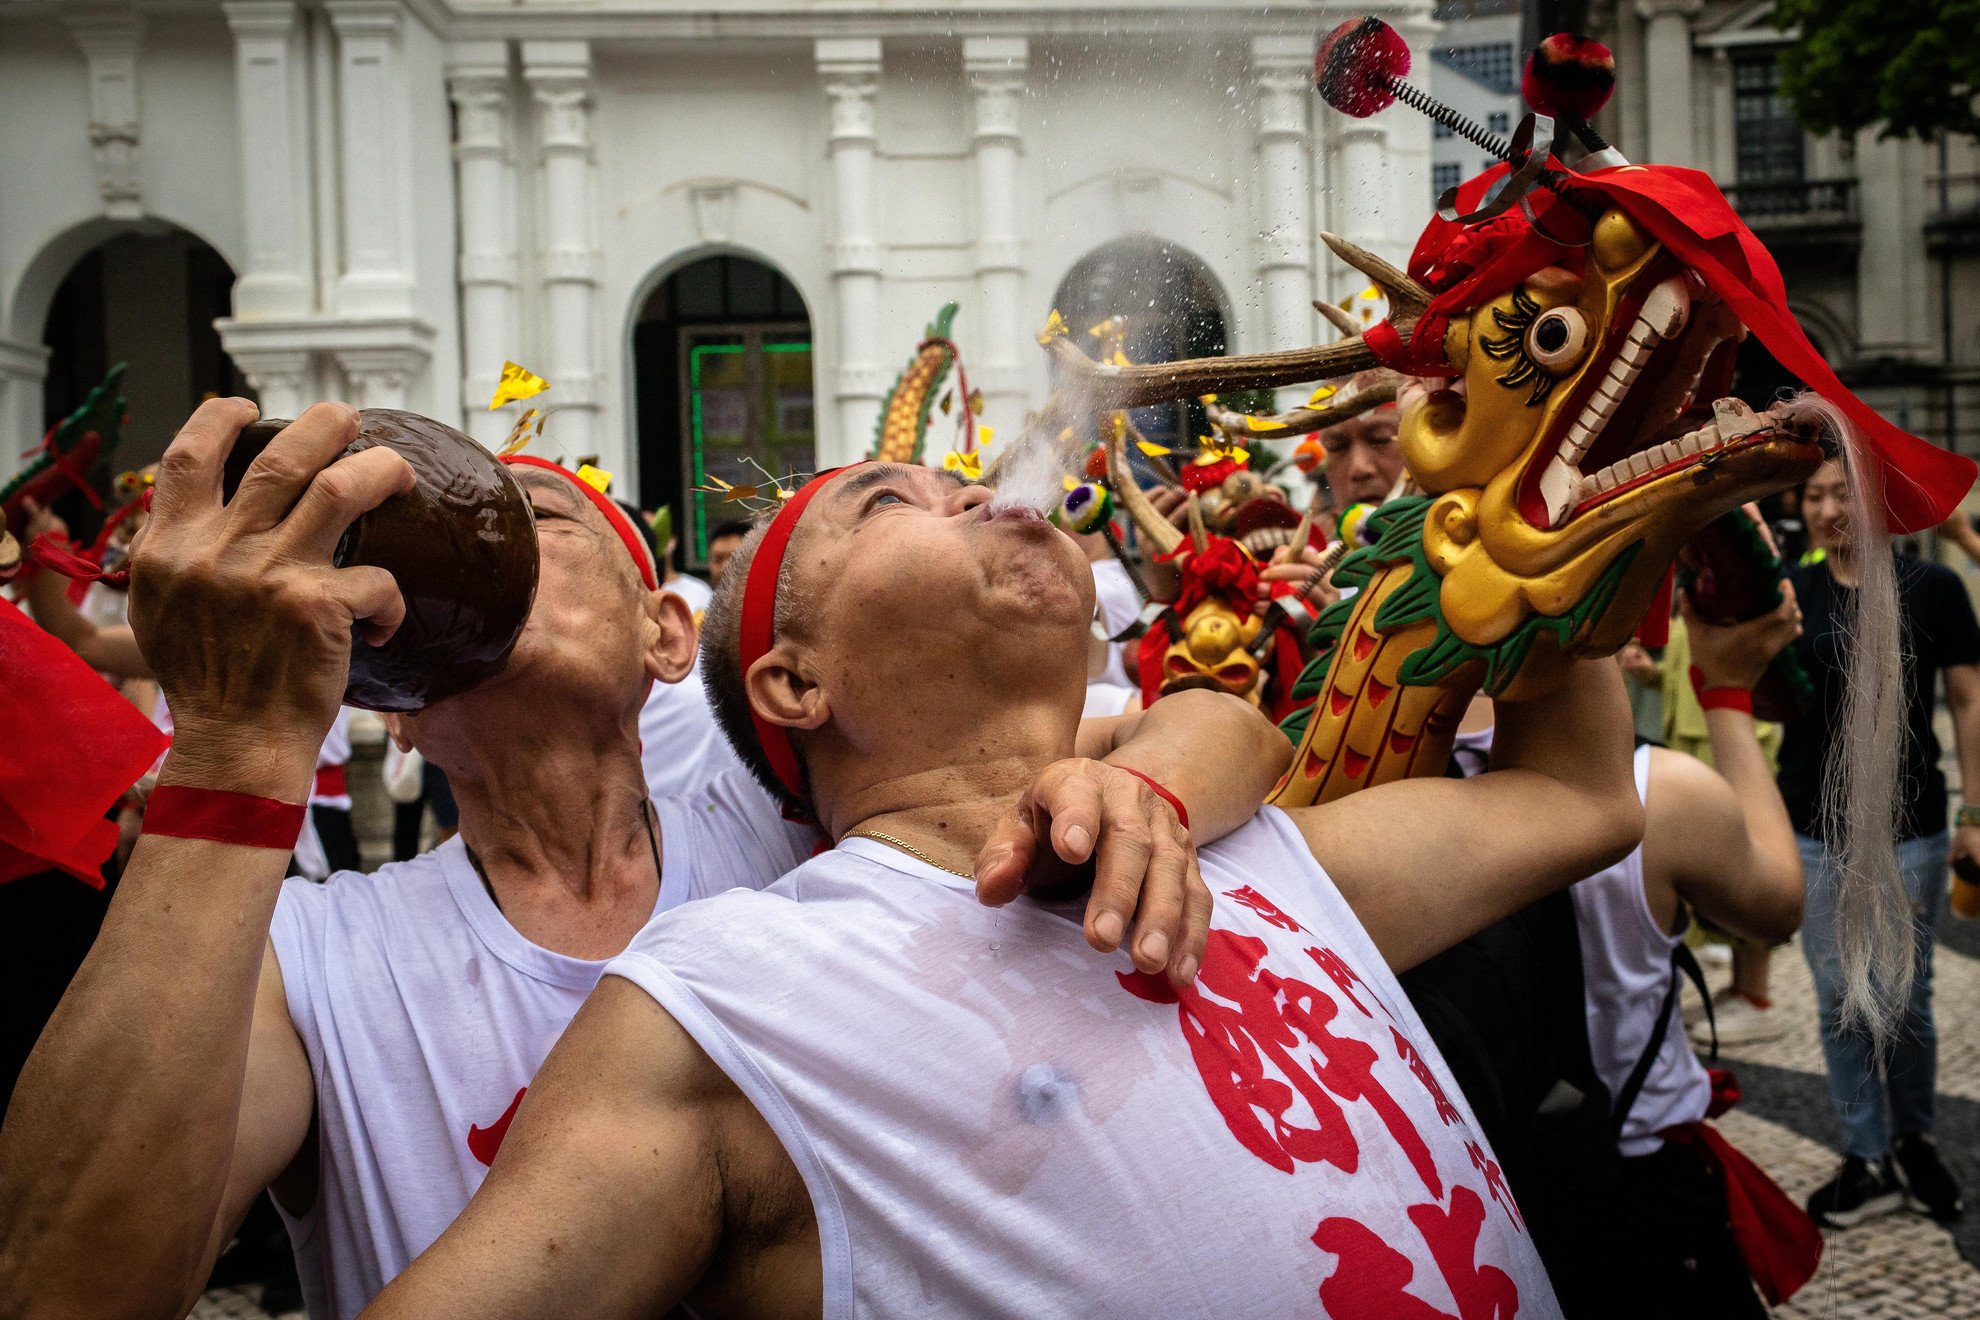 Május 26., péntek: Három év kihagyás után ismét megrendezték a híres részeg sárkány ünnepét Makaóban. A Covid járvány miatt néhány évre felfüggesztették a nemzeti szellemi kulturális örökség listáján szereplő táncos felvonulást, ahol a résztvevők az utcán sört és rizsbort spiccelnek a szájukból miközben tántorognak, mintha részegek lennének. Az ünnep Makaó halászközösségéből ered, amikor az emberek összegyűltek és imádkoztak a halászflottáért. Mára ezt a népünnepélyt kiterjesztették az élet minden területére